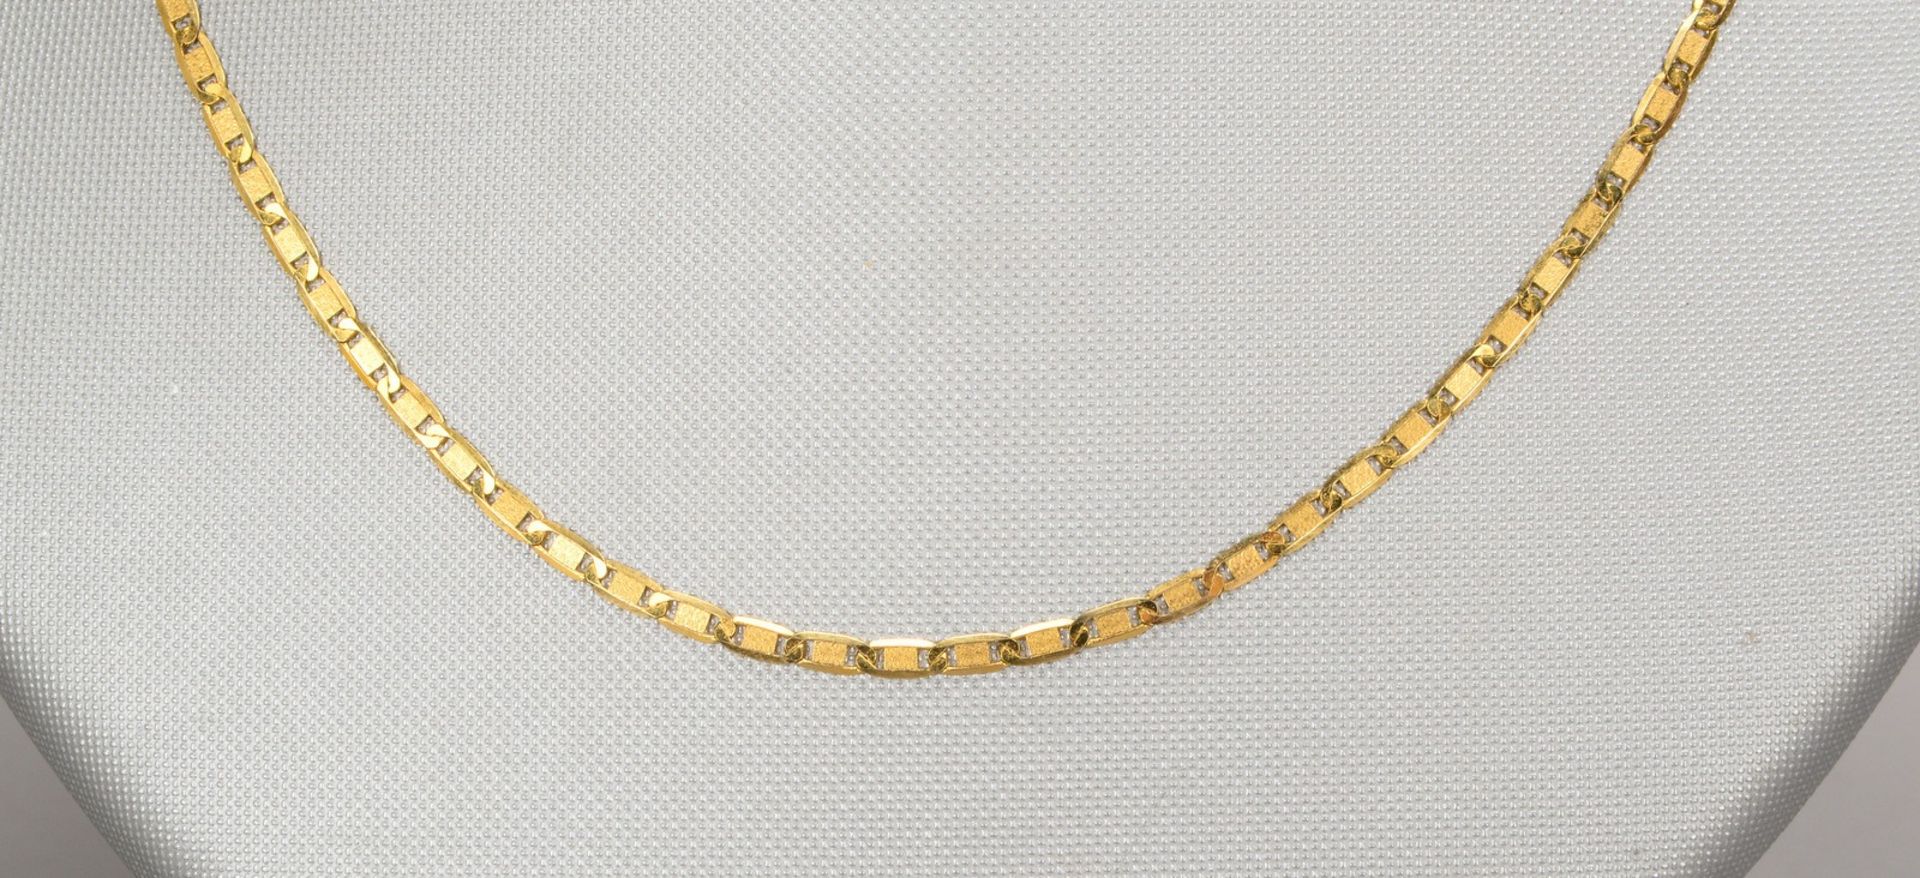 Halskette, 585 GG (gestempelt), flache Glieder, mit Karabinerschlie&szlig;e; L&auml;nge 53 cm, Gewic - Image 2 of 2